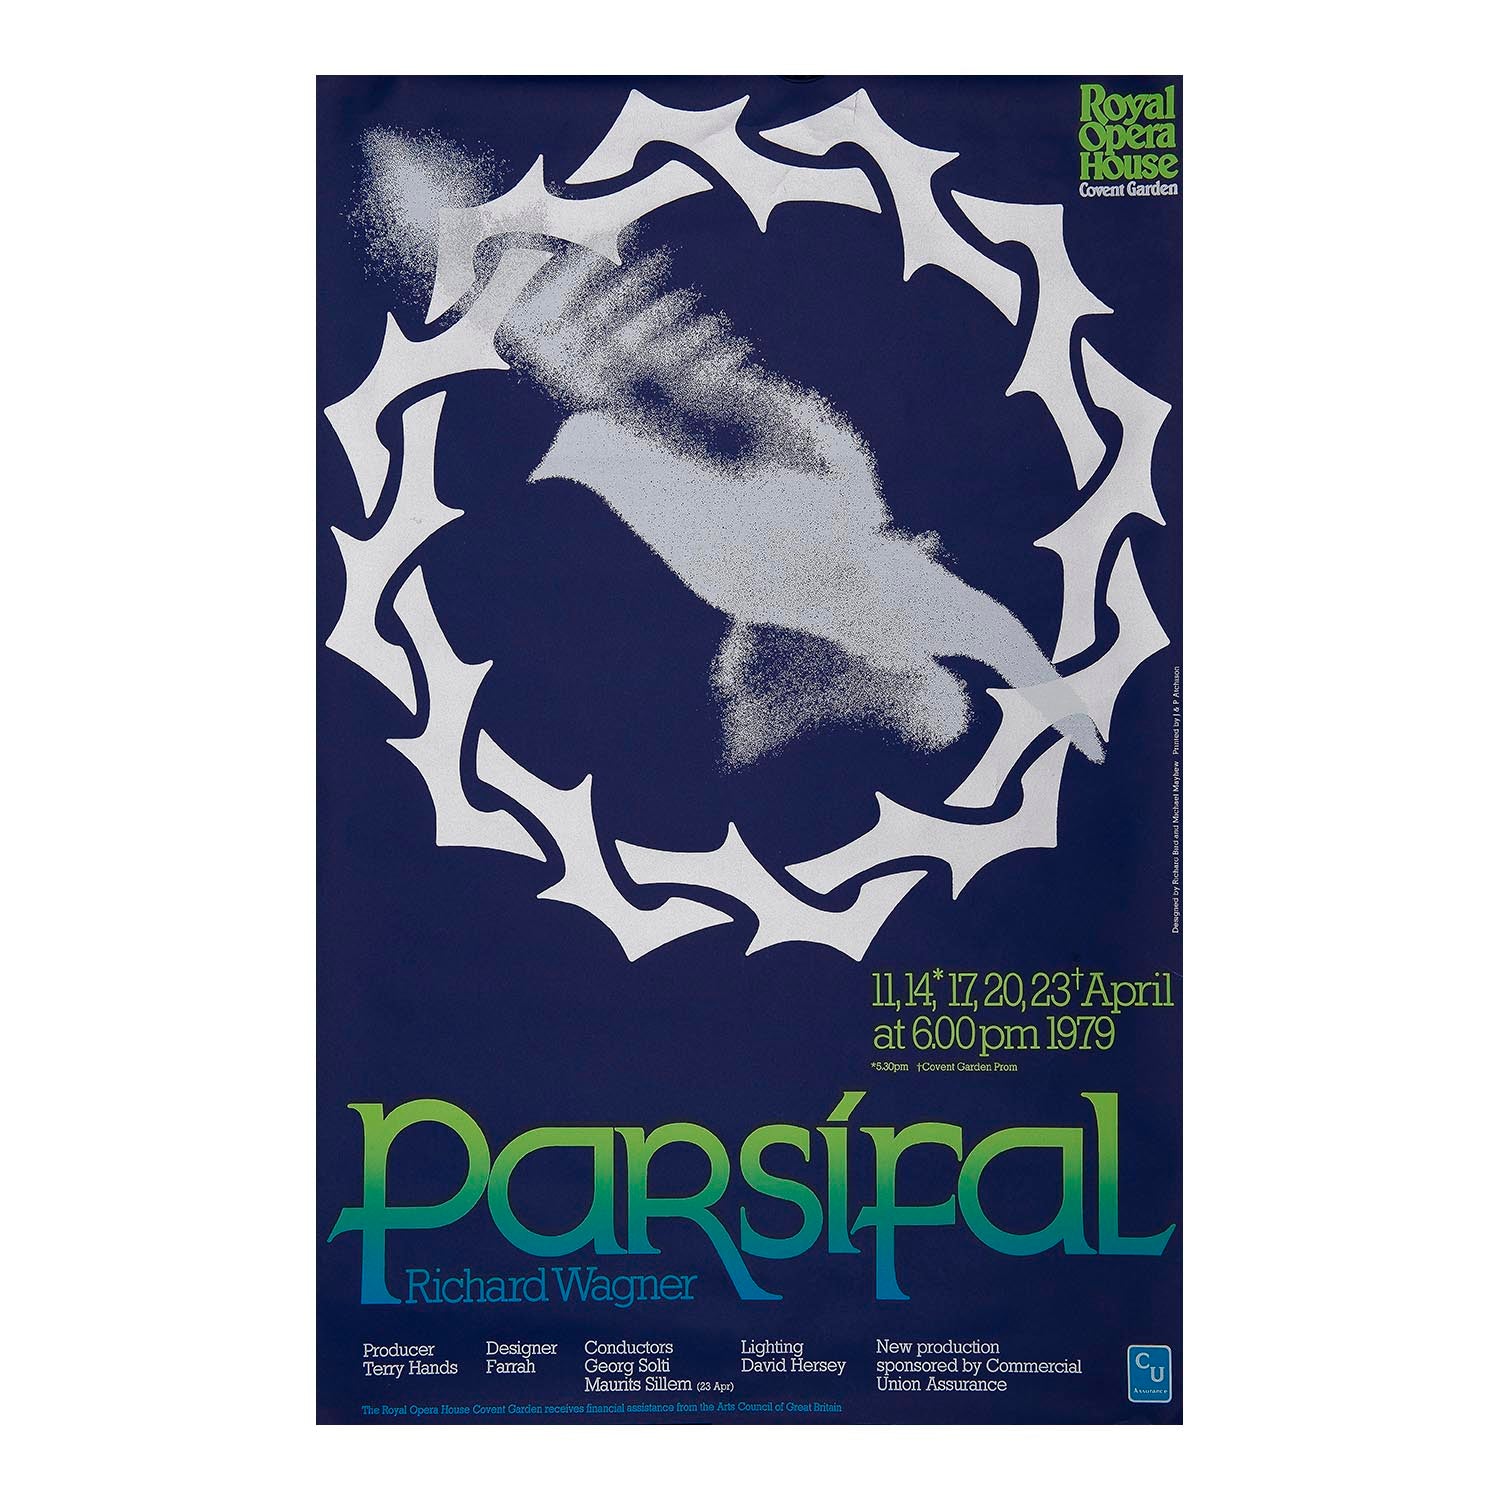 Parsifal, Royal Opera House